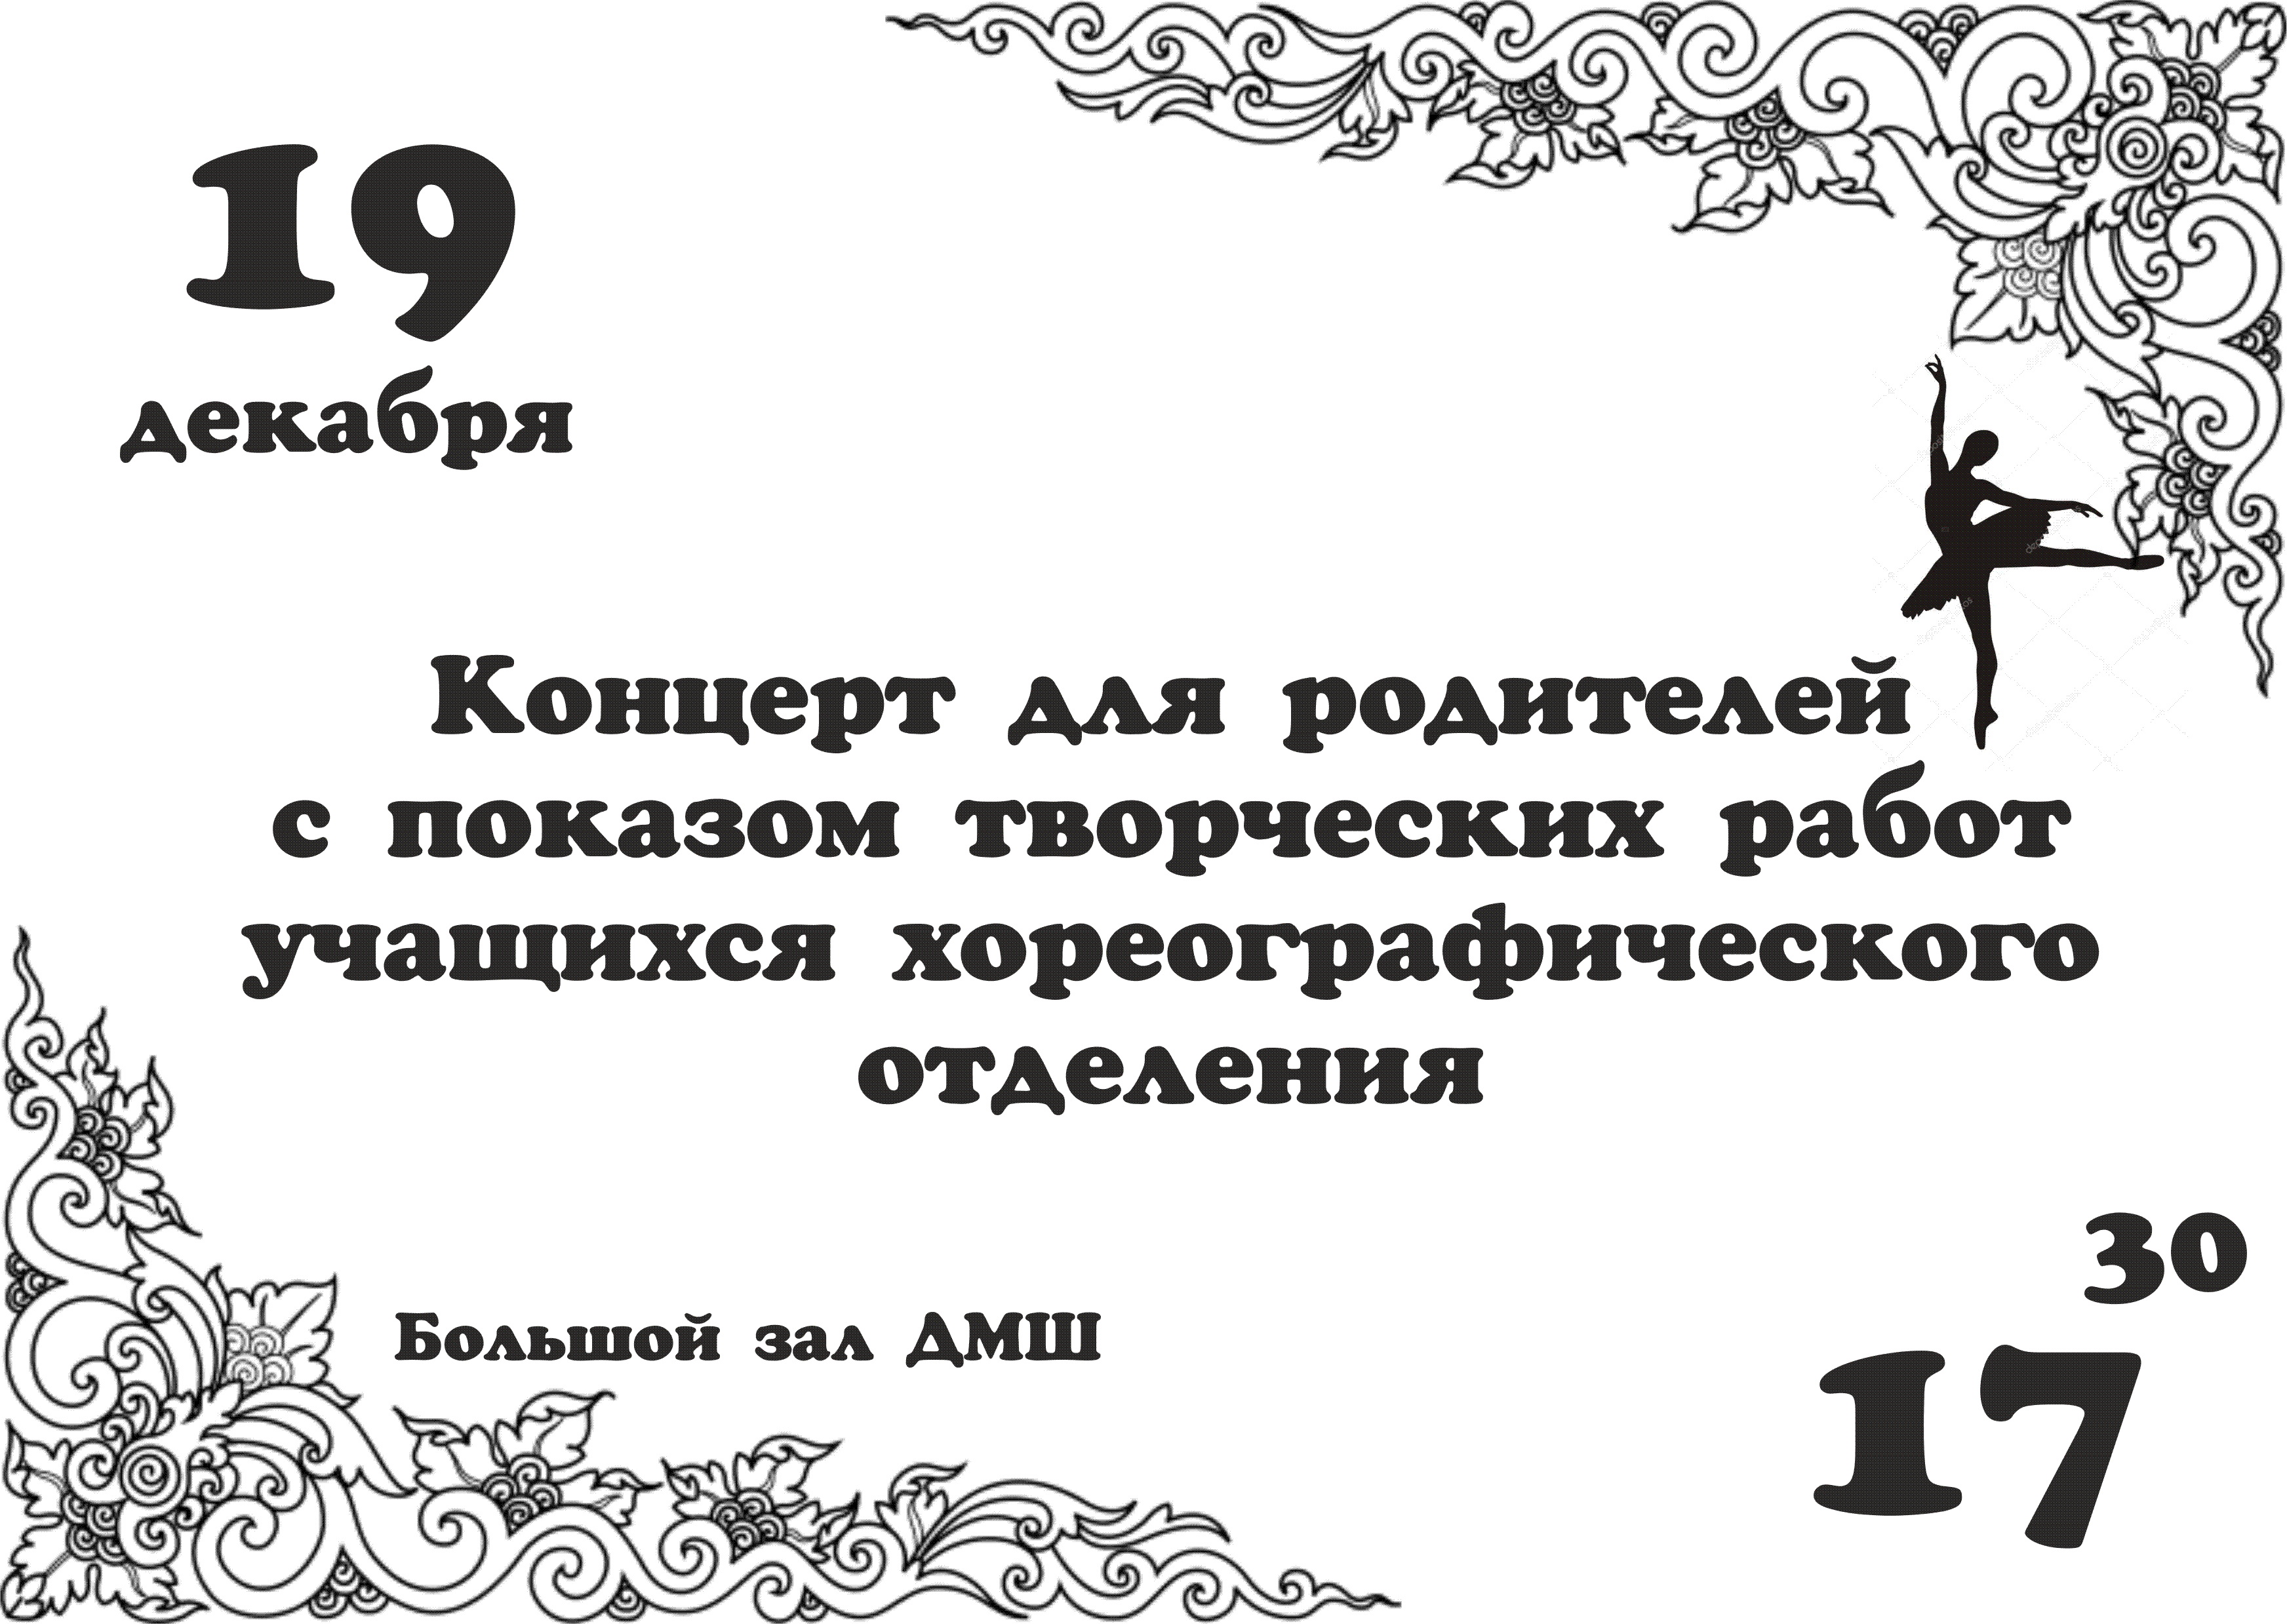 2018.12.19 Хорекогр род.с. концерт